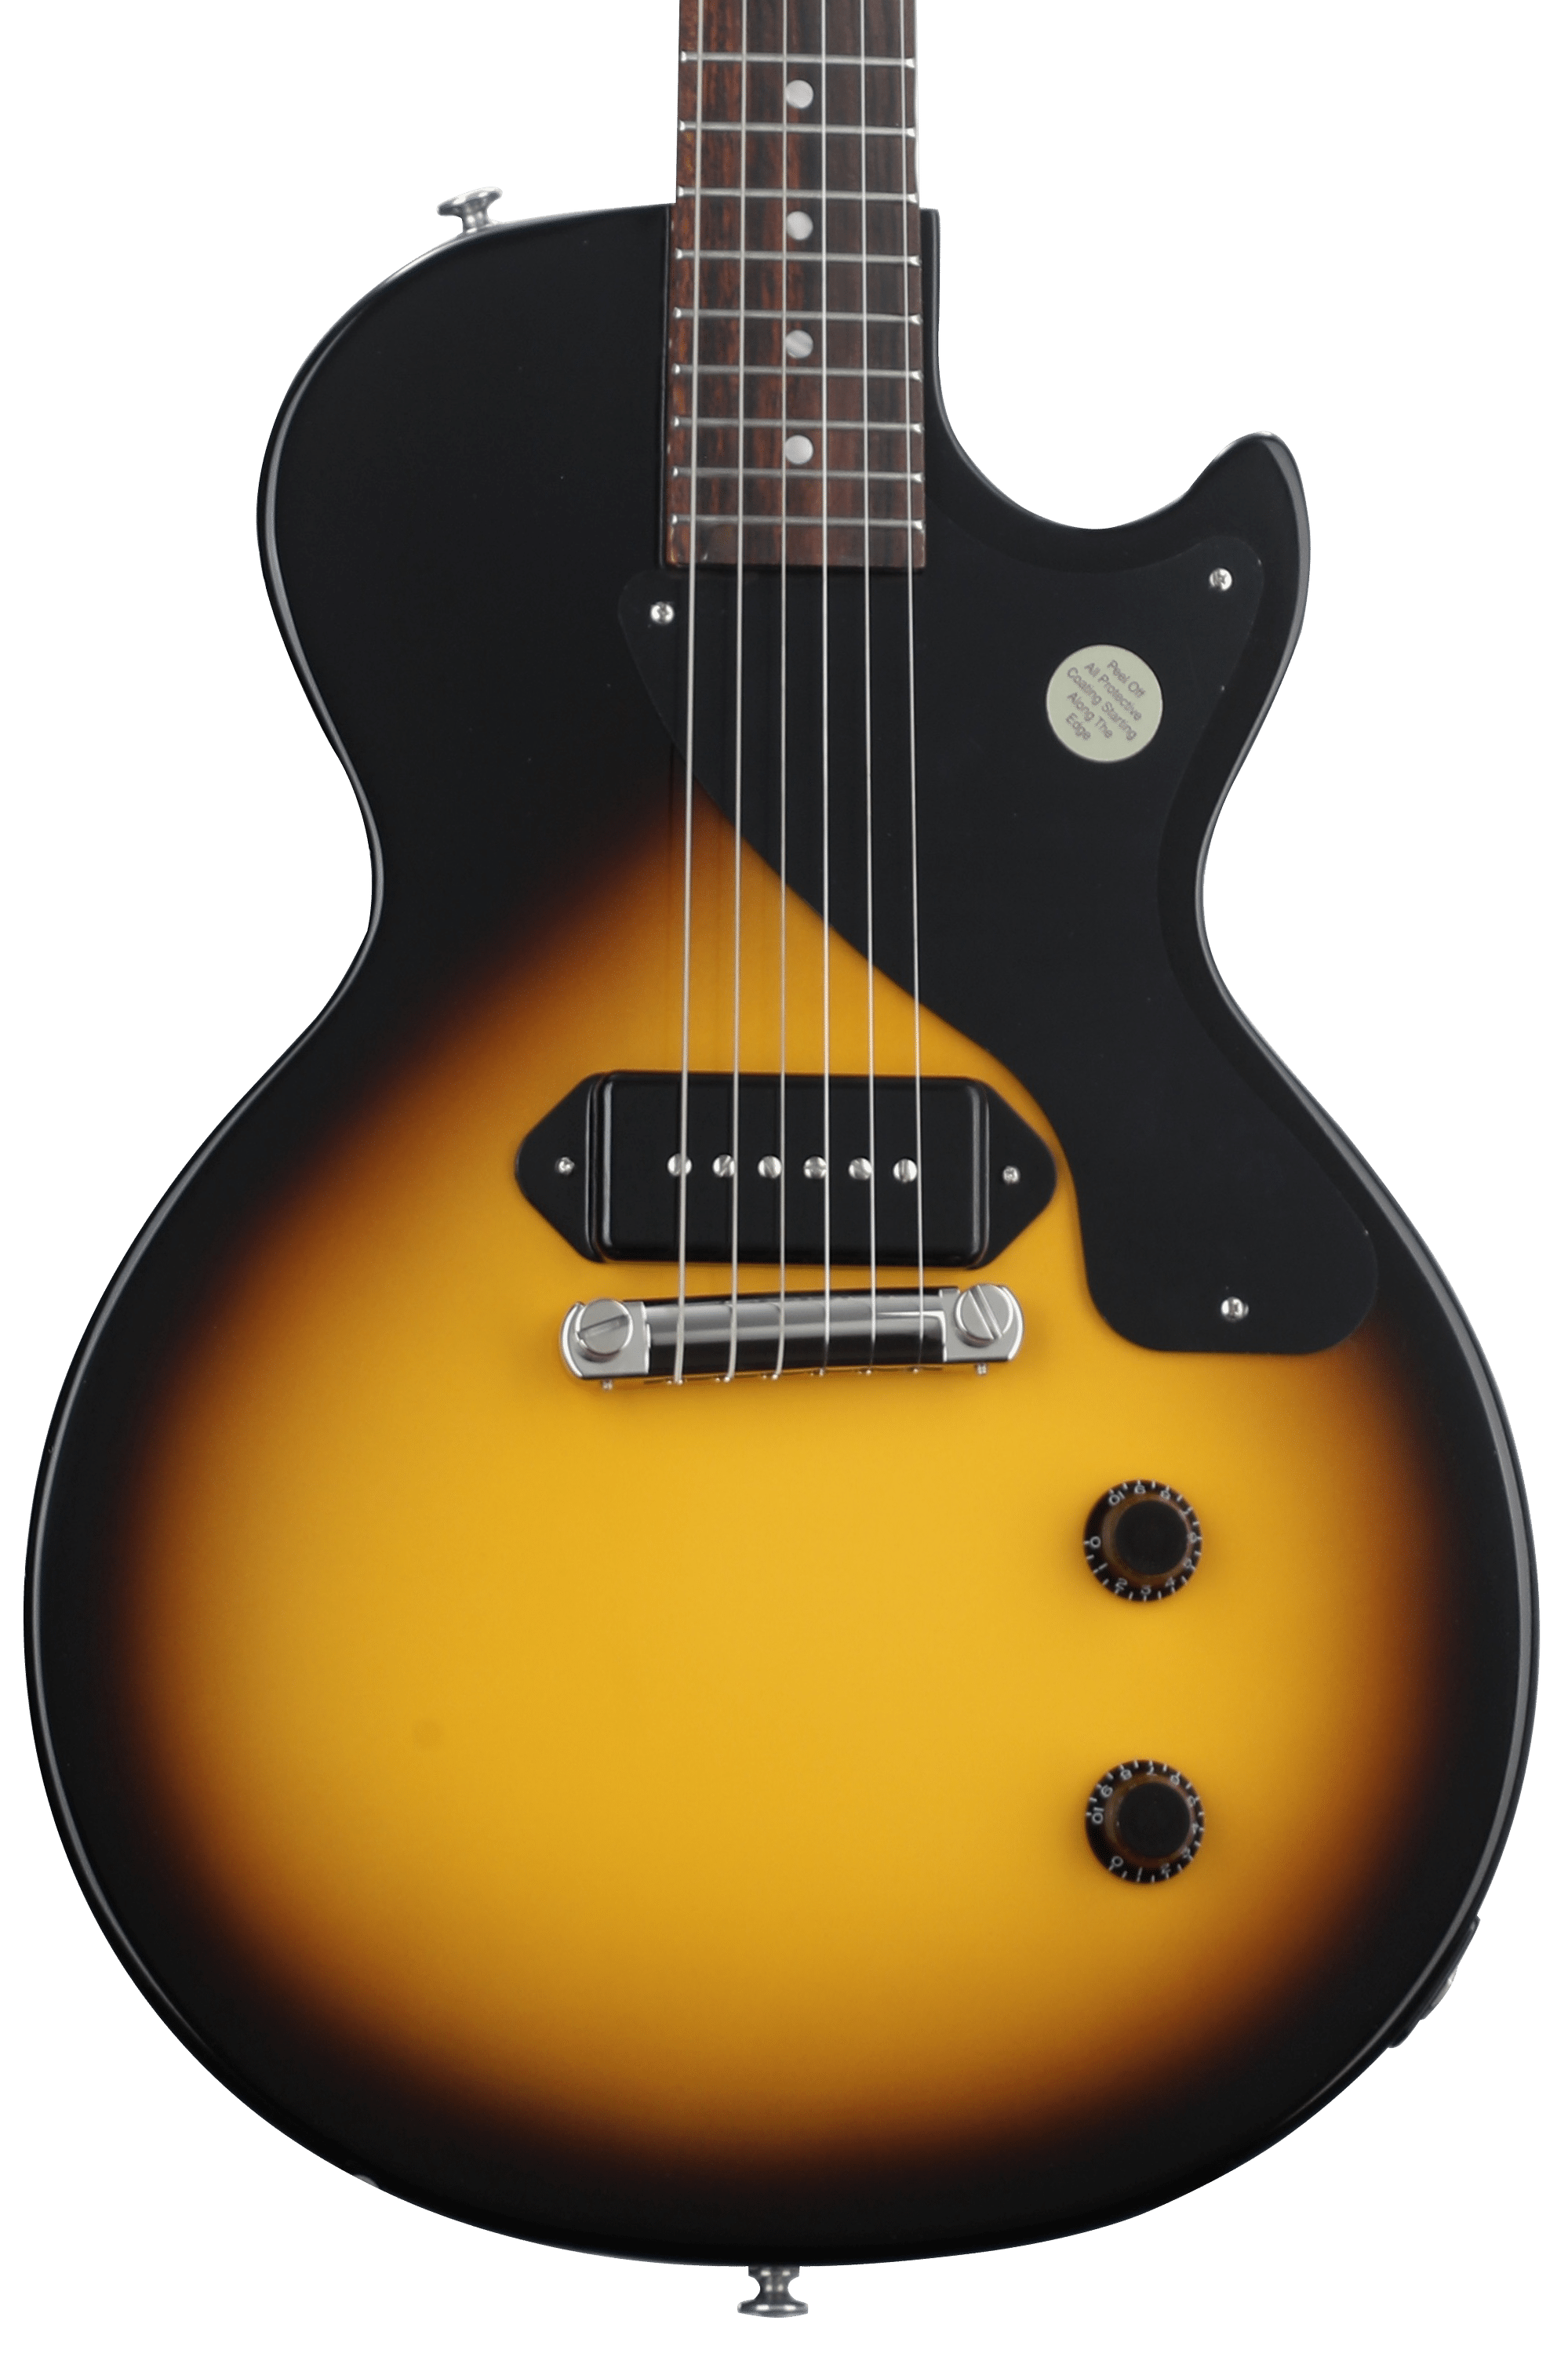 ご購Gibson Les Paul Junior Single Cutaway Worn Cherry 2009 レスポール ジュニア LP Jr ギブソン